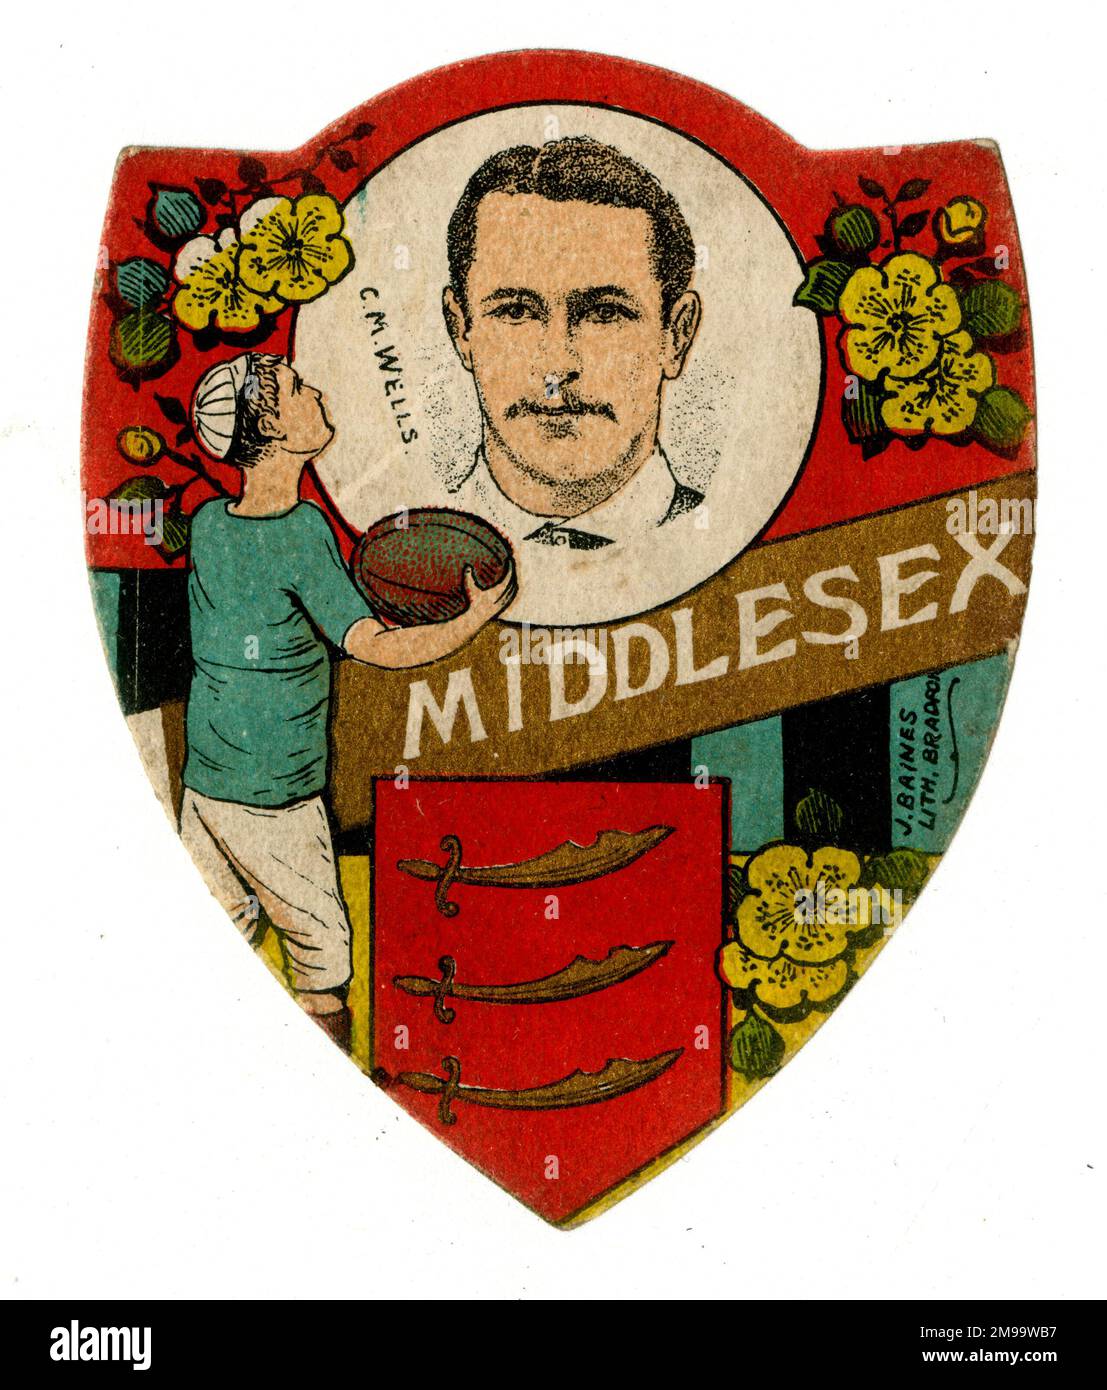 Cyril Mowbray Wells (1871-1963), Middlesex Rugby Player und erstklassiger Cricketspieler. Stockfoto